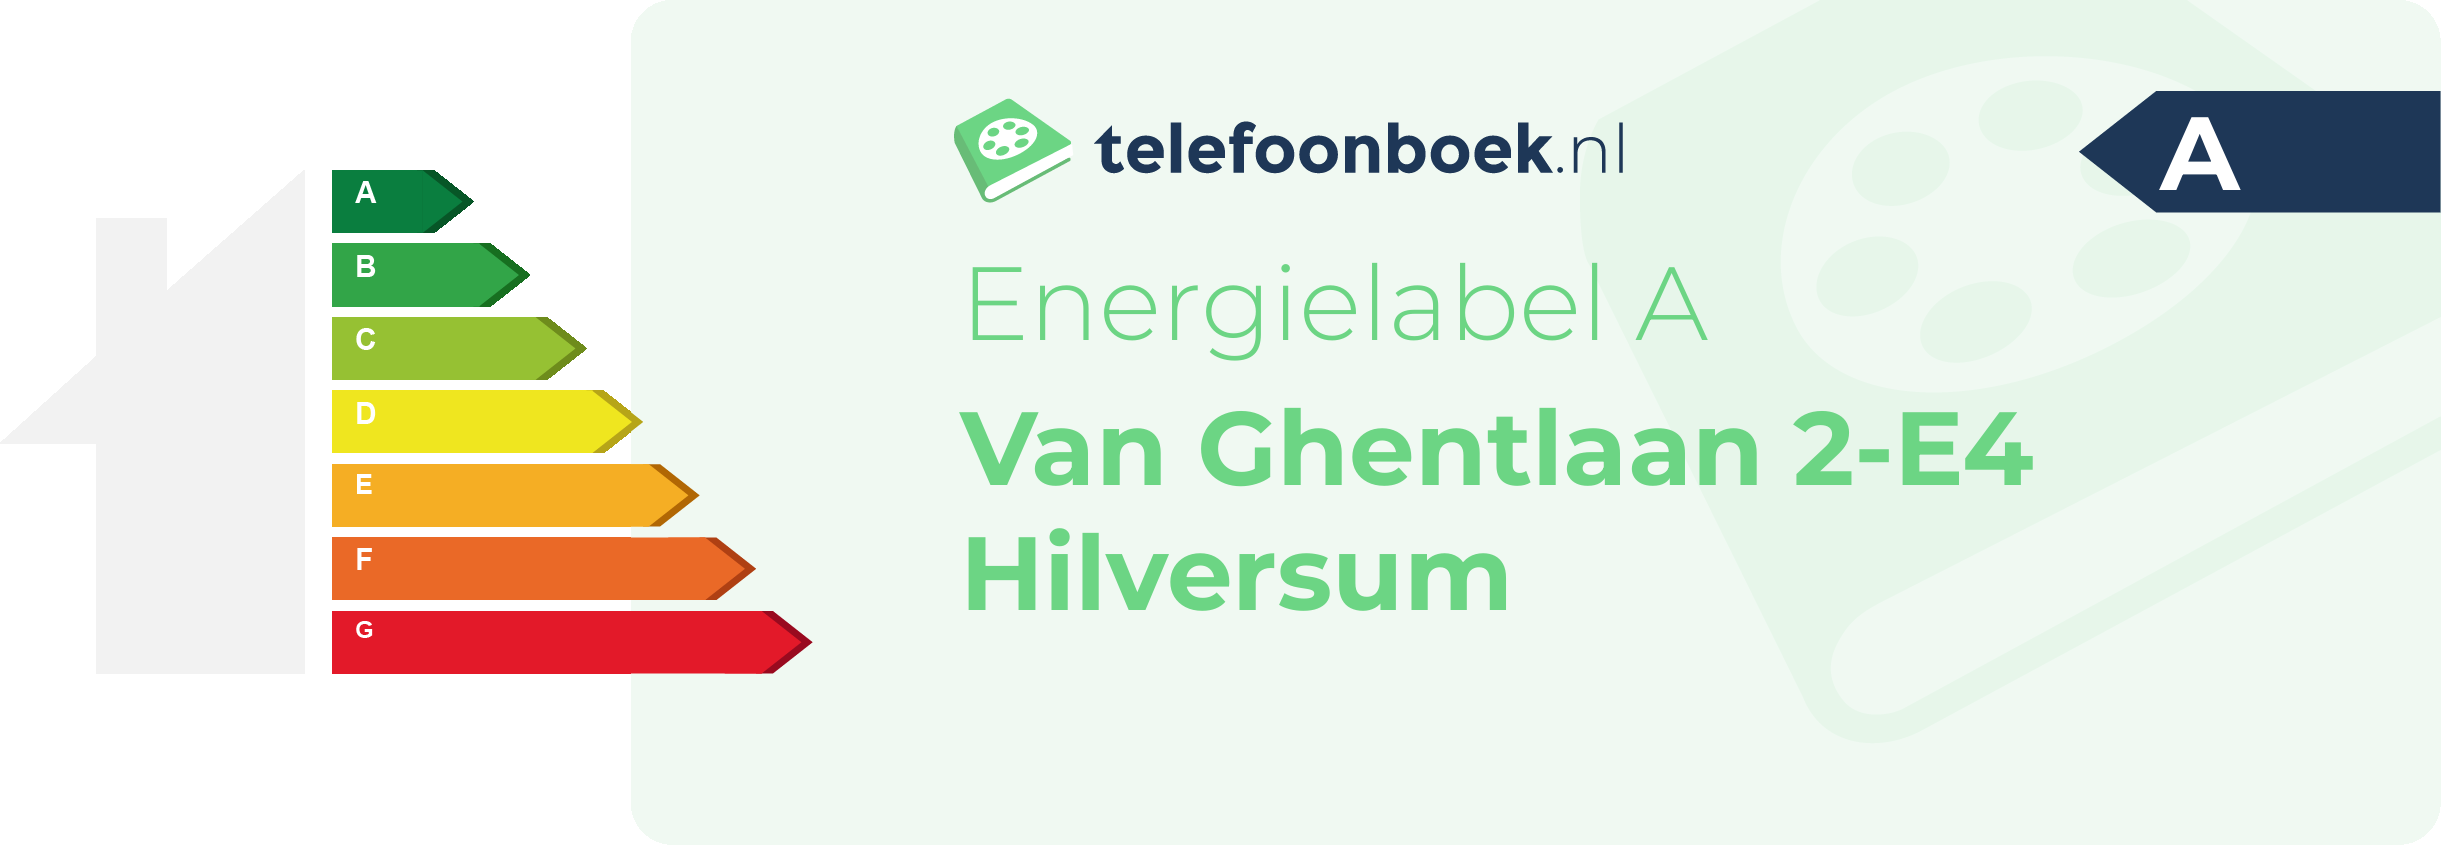 Energielabel Van Ghentlaan 2-E4 Hilversum